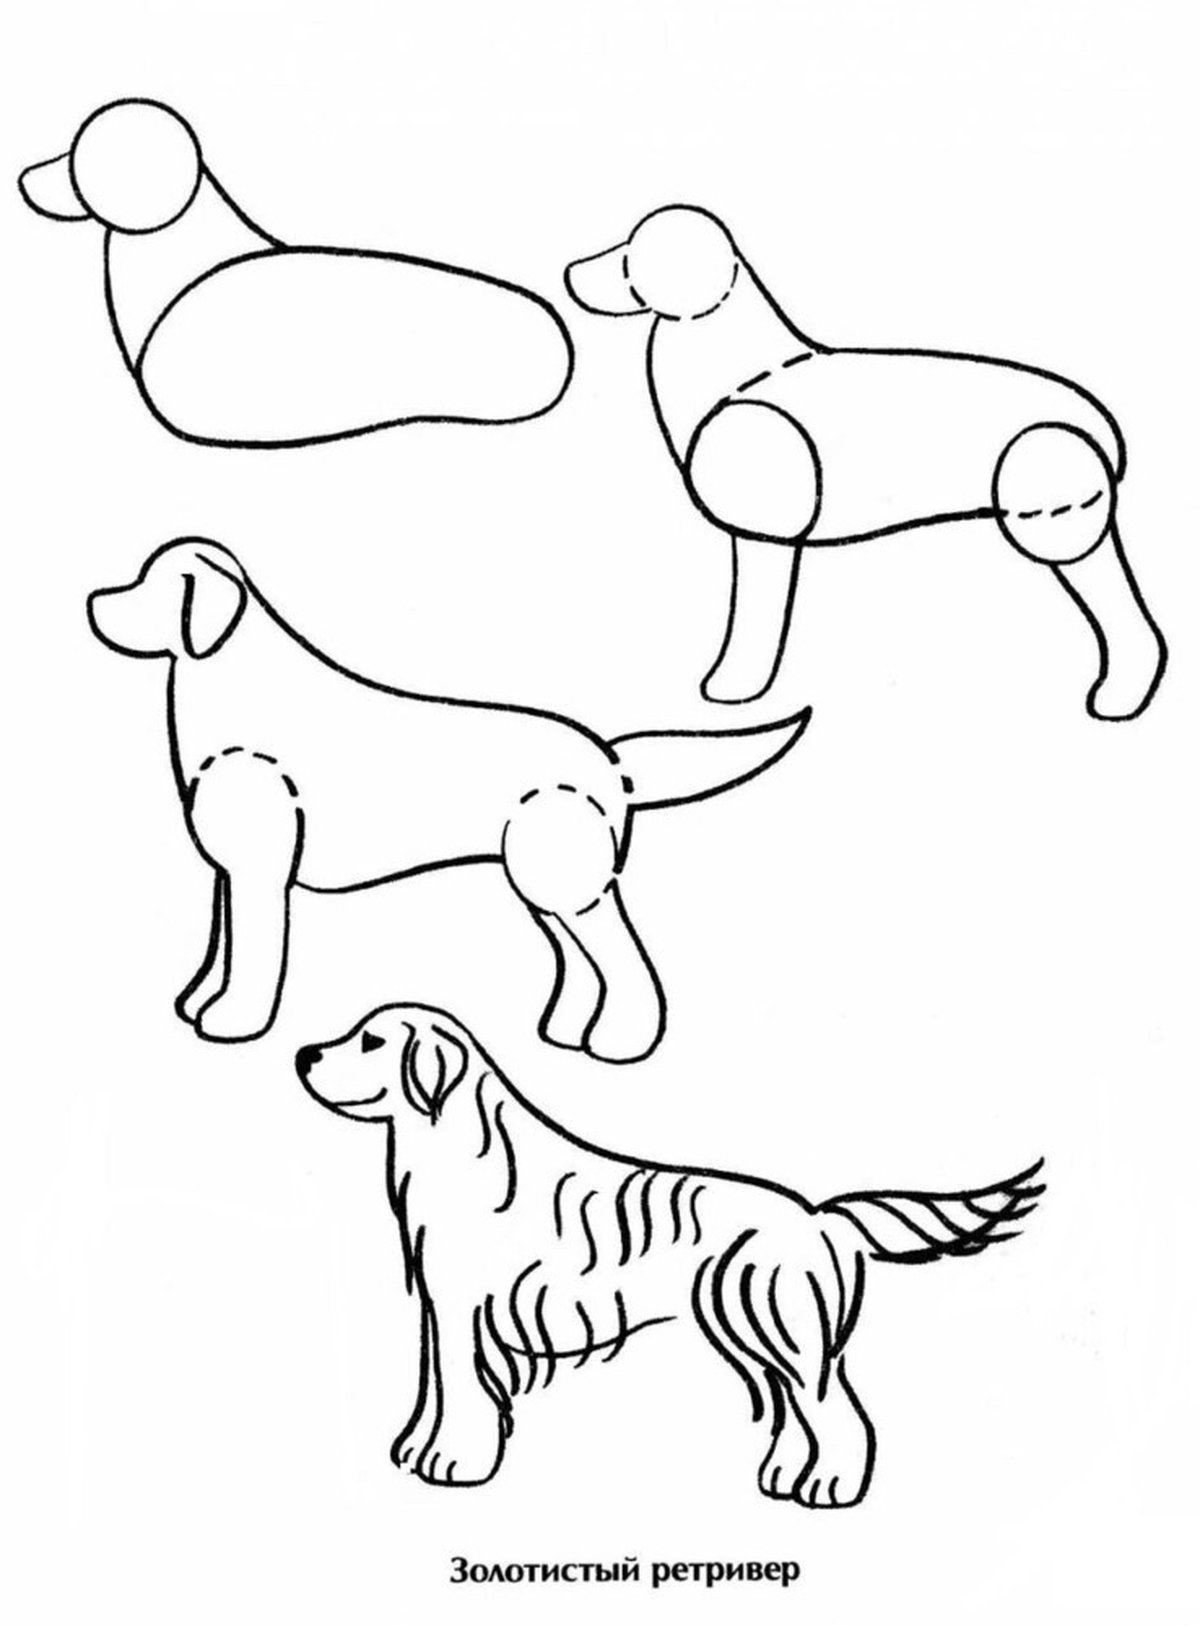 Собака карандашом легко для детей. Уроки рисования собака для детей. Схема рисования собаки для детей. Рисунки собак для срисовки лёгкие. Поэтапное рисование собаки для детей.